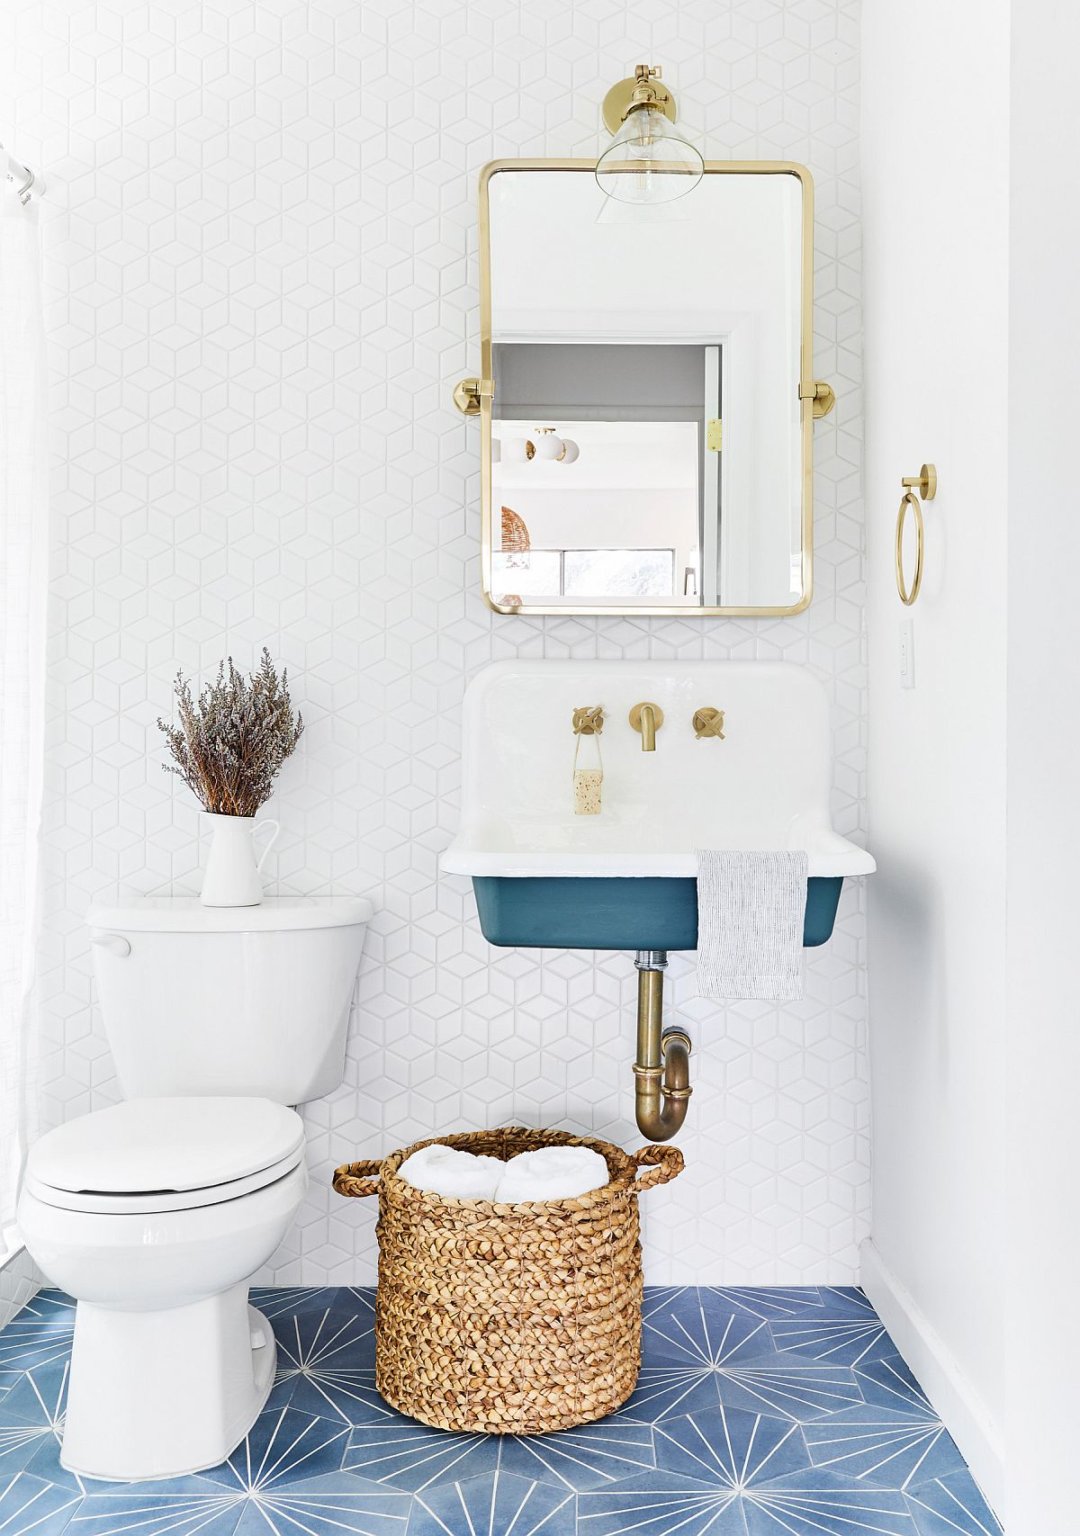 hình ảnh phòng tắm nhỏ hiện đại với gạch lát màu xanh, ốp tường màu trắng, giỏ đồ, khung gương mạ đồng